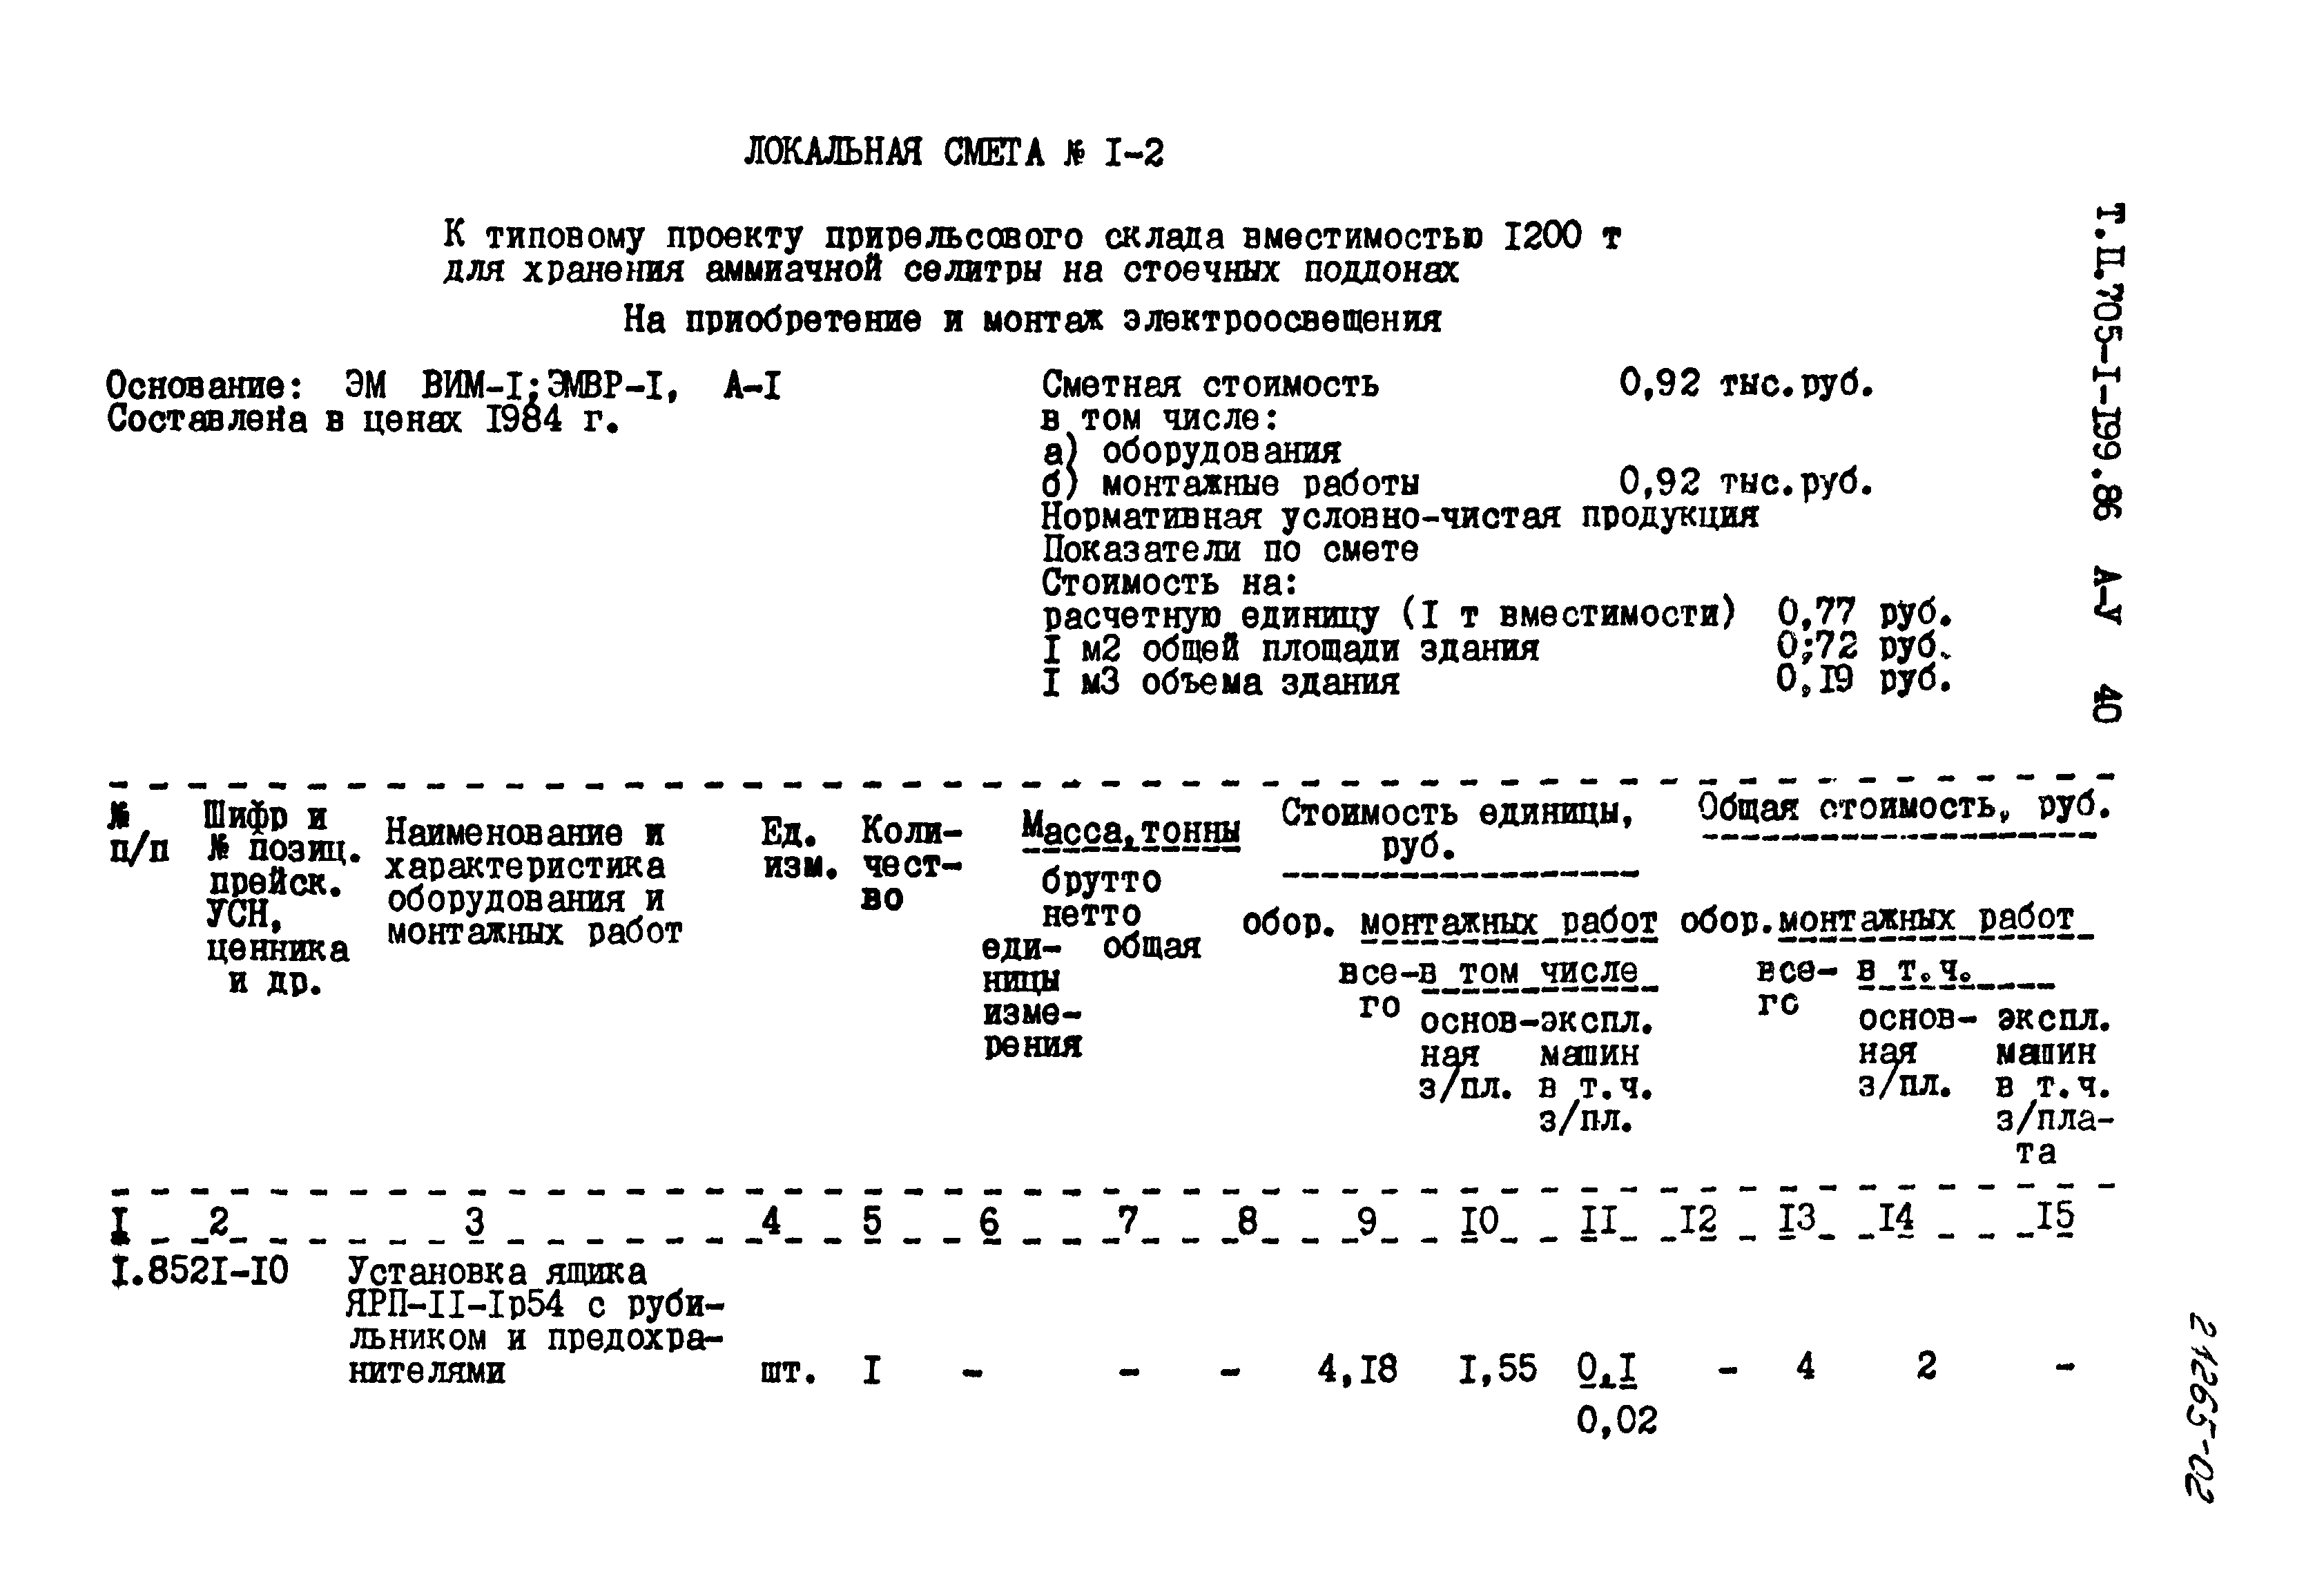 Типовой проект 705-1-199.86